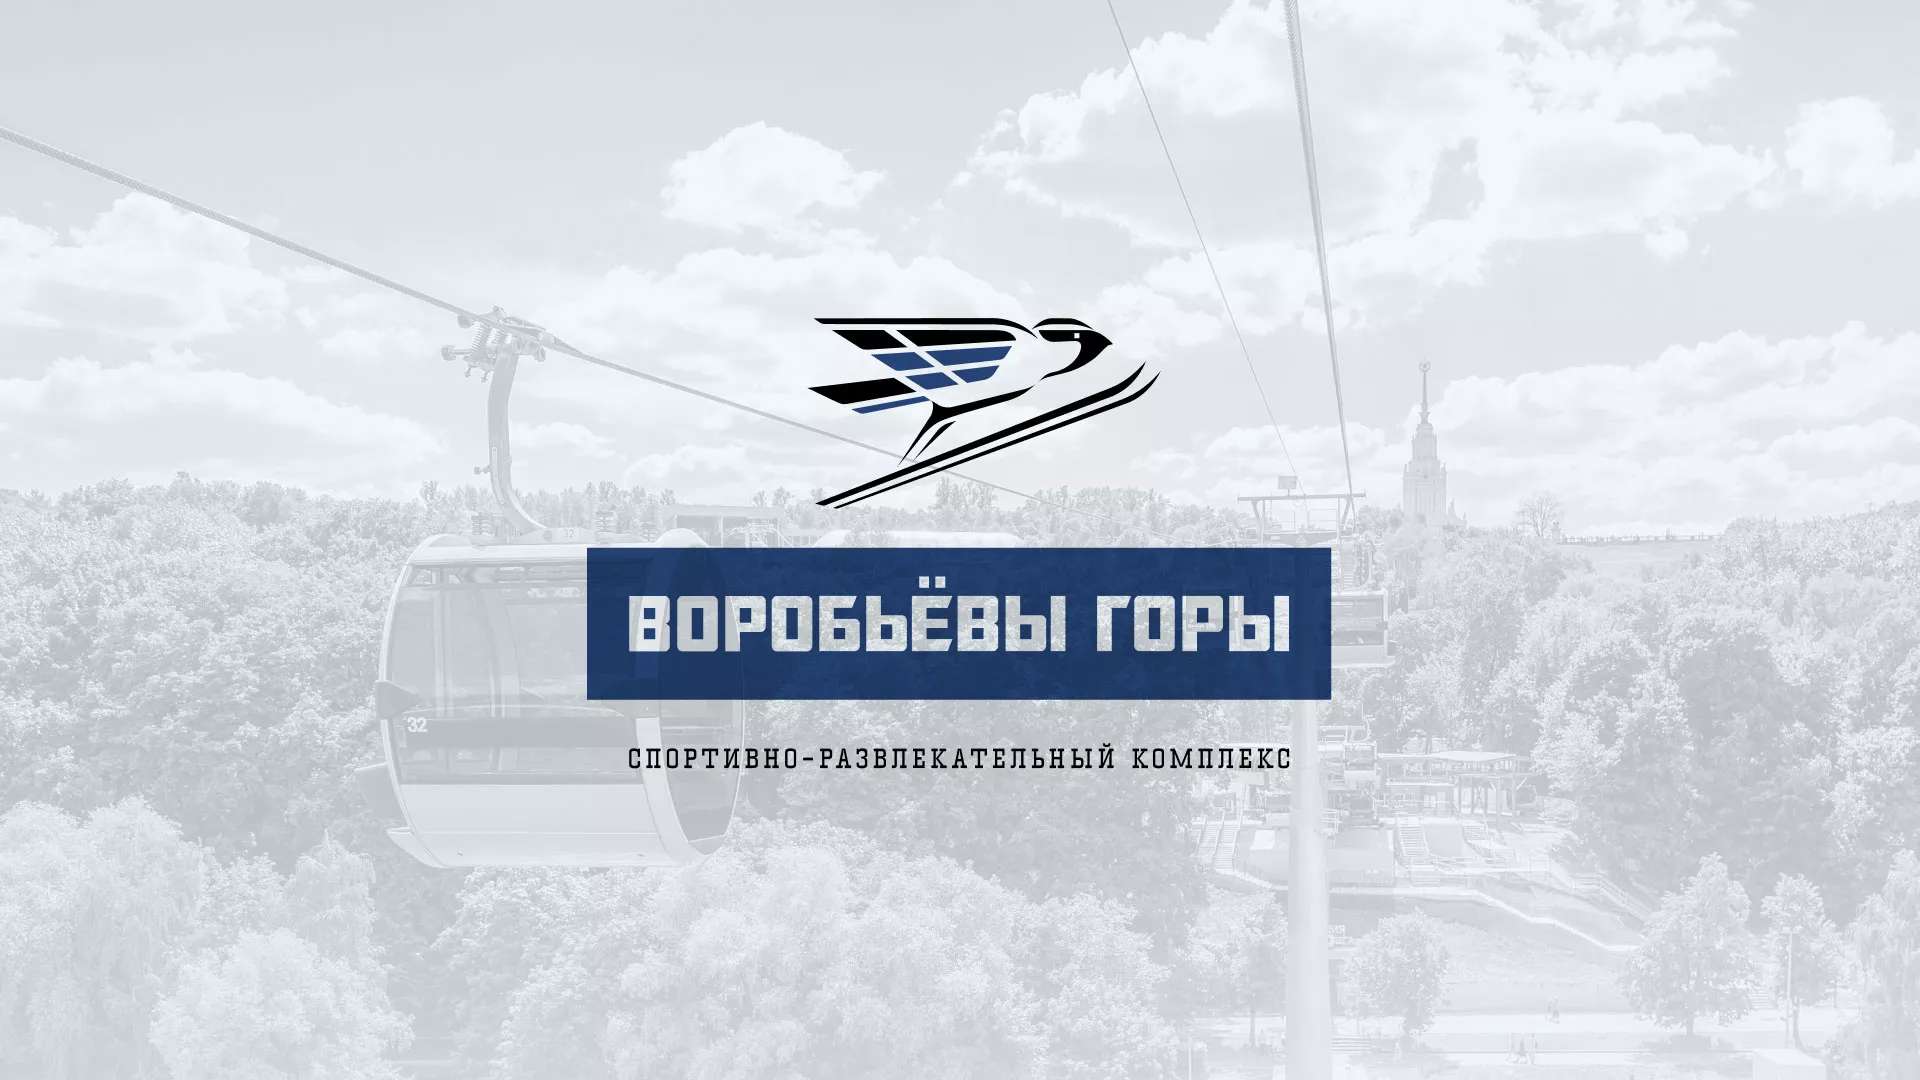 Разработка сайта в Нижнем Новгороде для спортивно-развлекательного комплекса «Воробьёвы горы»